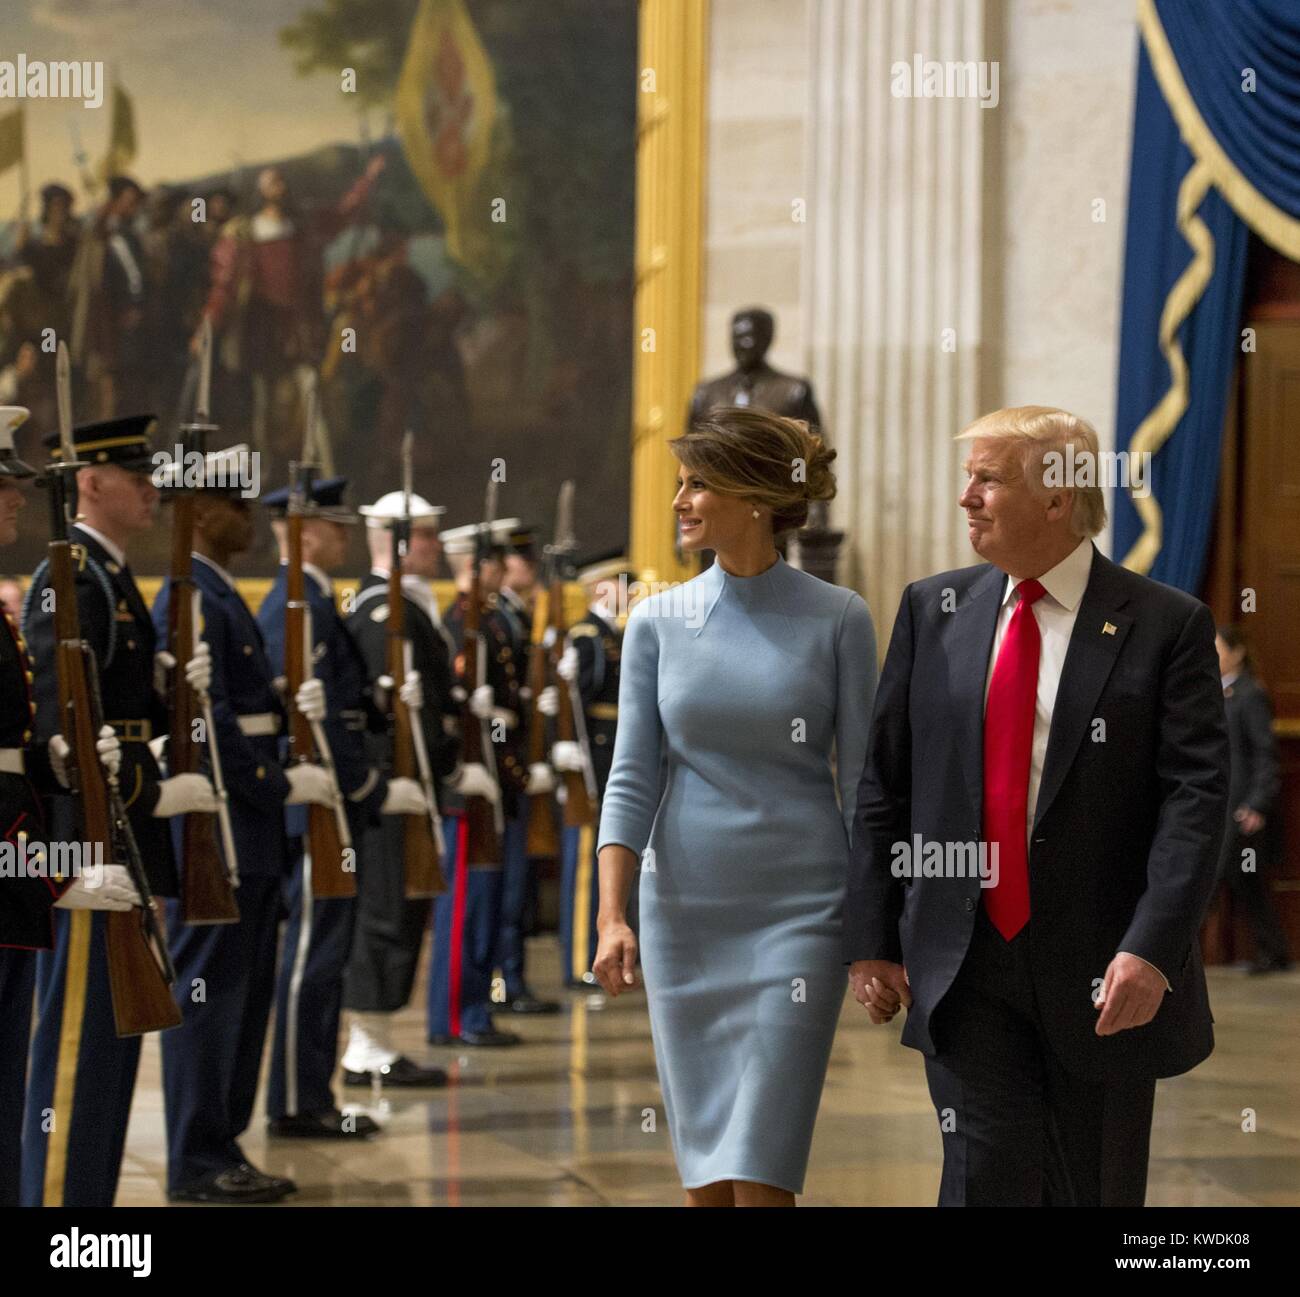 Le président Donald Trump et la Première Dame Melania Trump promenade par un cordon de forces interarmées de l'honneur. La Première dame porte une robe fourreau bleu poudre conçu par Ralph Lauren dans la rotonde du Capitole après la cérémonie d'inauguration, le 20 janvier 2017 (BSLOC   2017 18 123) Banque D'Images